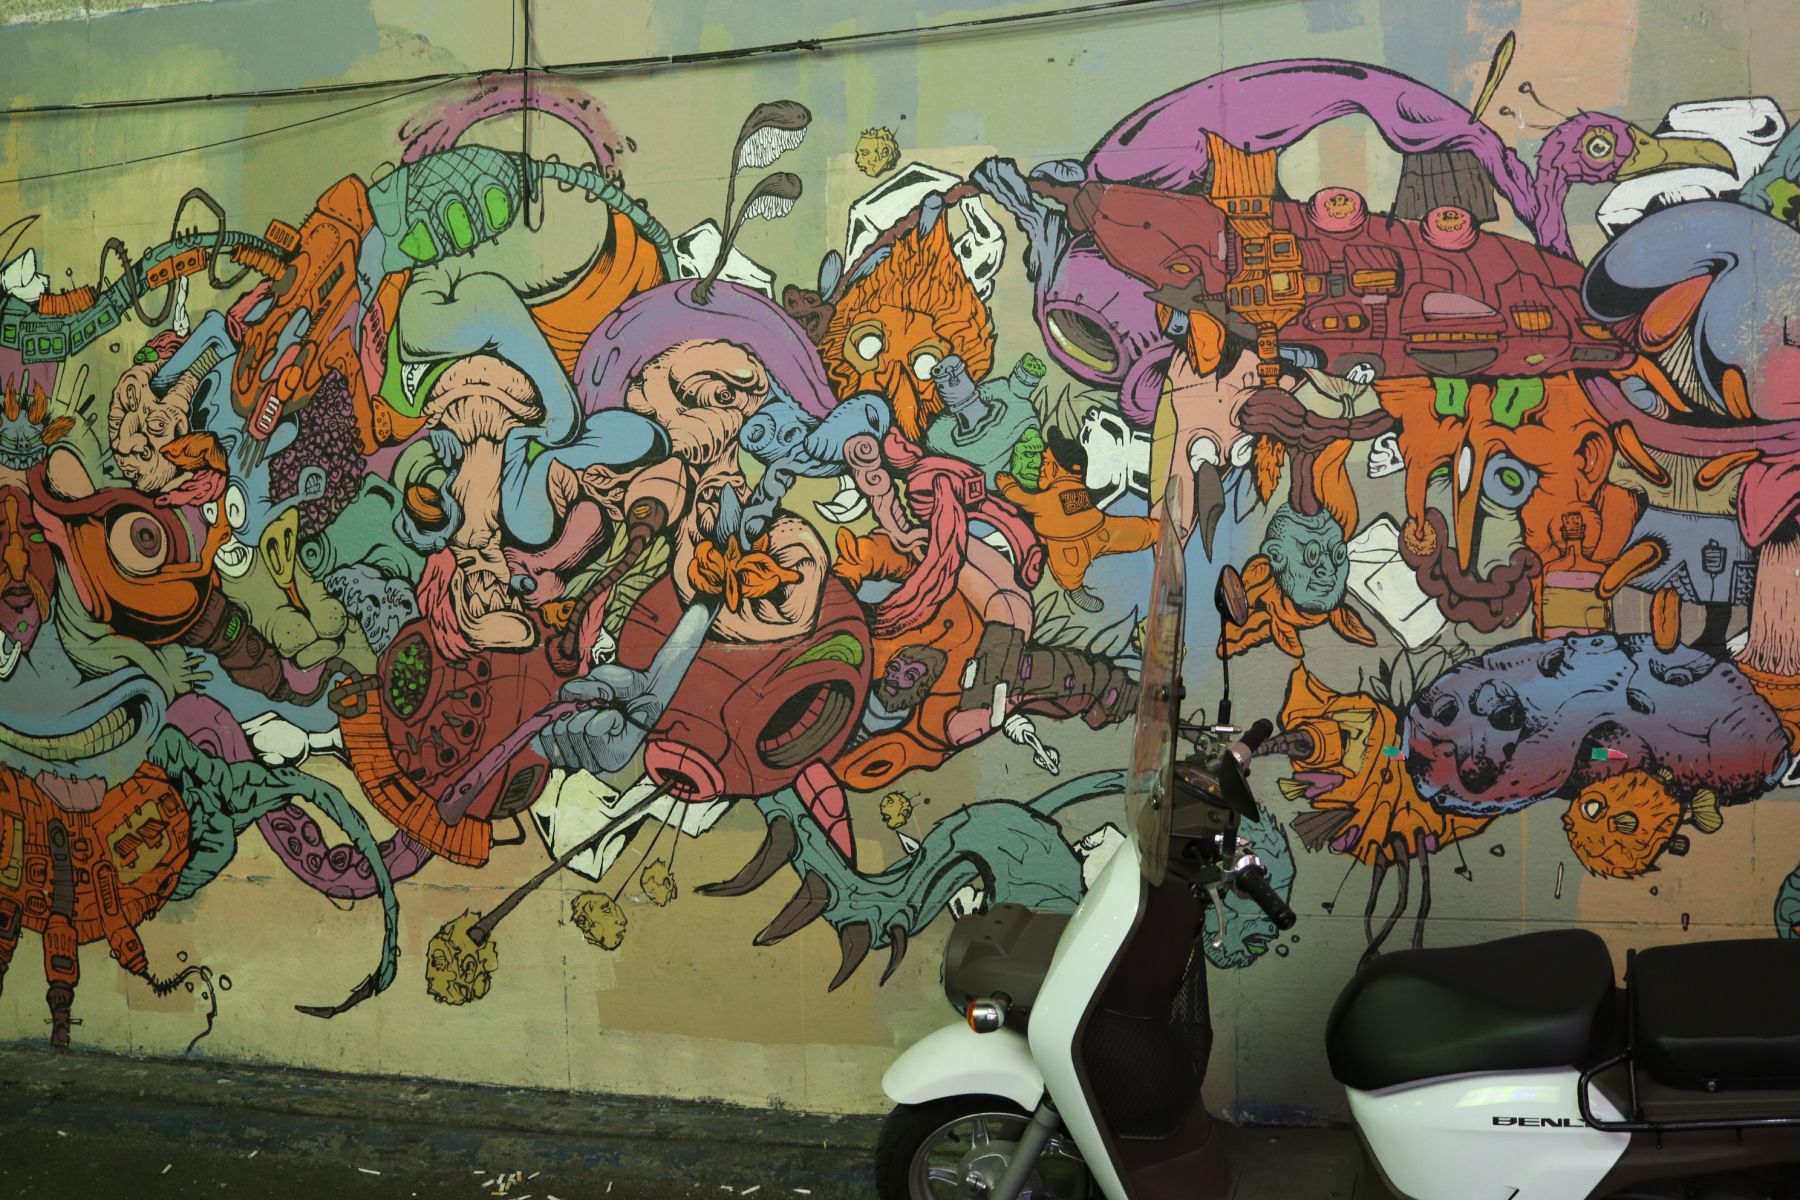 Ootd にぴったり 弘大で 映え壁 なストリートアートを巡ってみた ローリエプレス